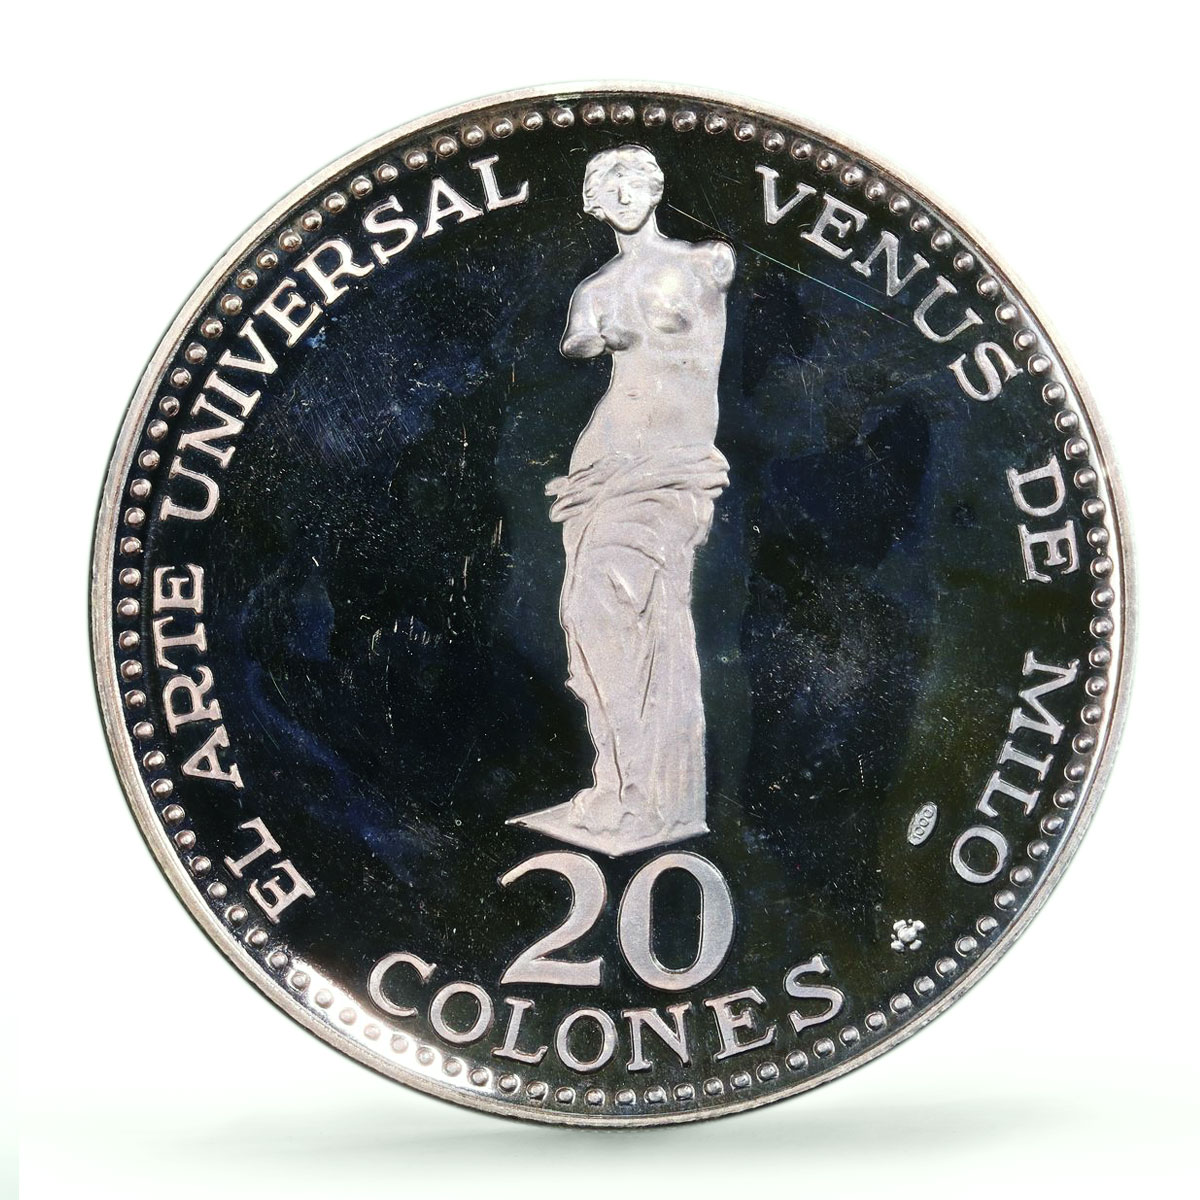 Costa Rica 20 colones Venus de Milo Statue Art KM-193 PR67 PCGS silver coin 1970